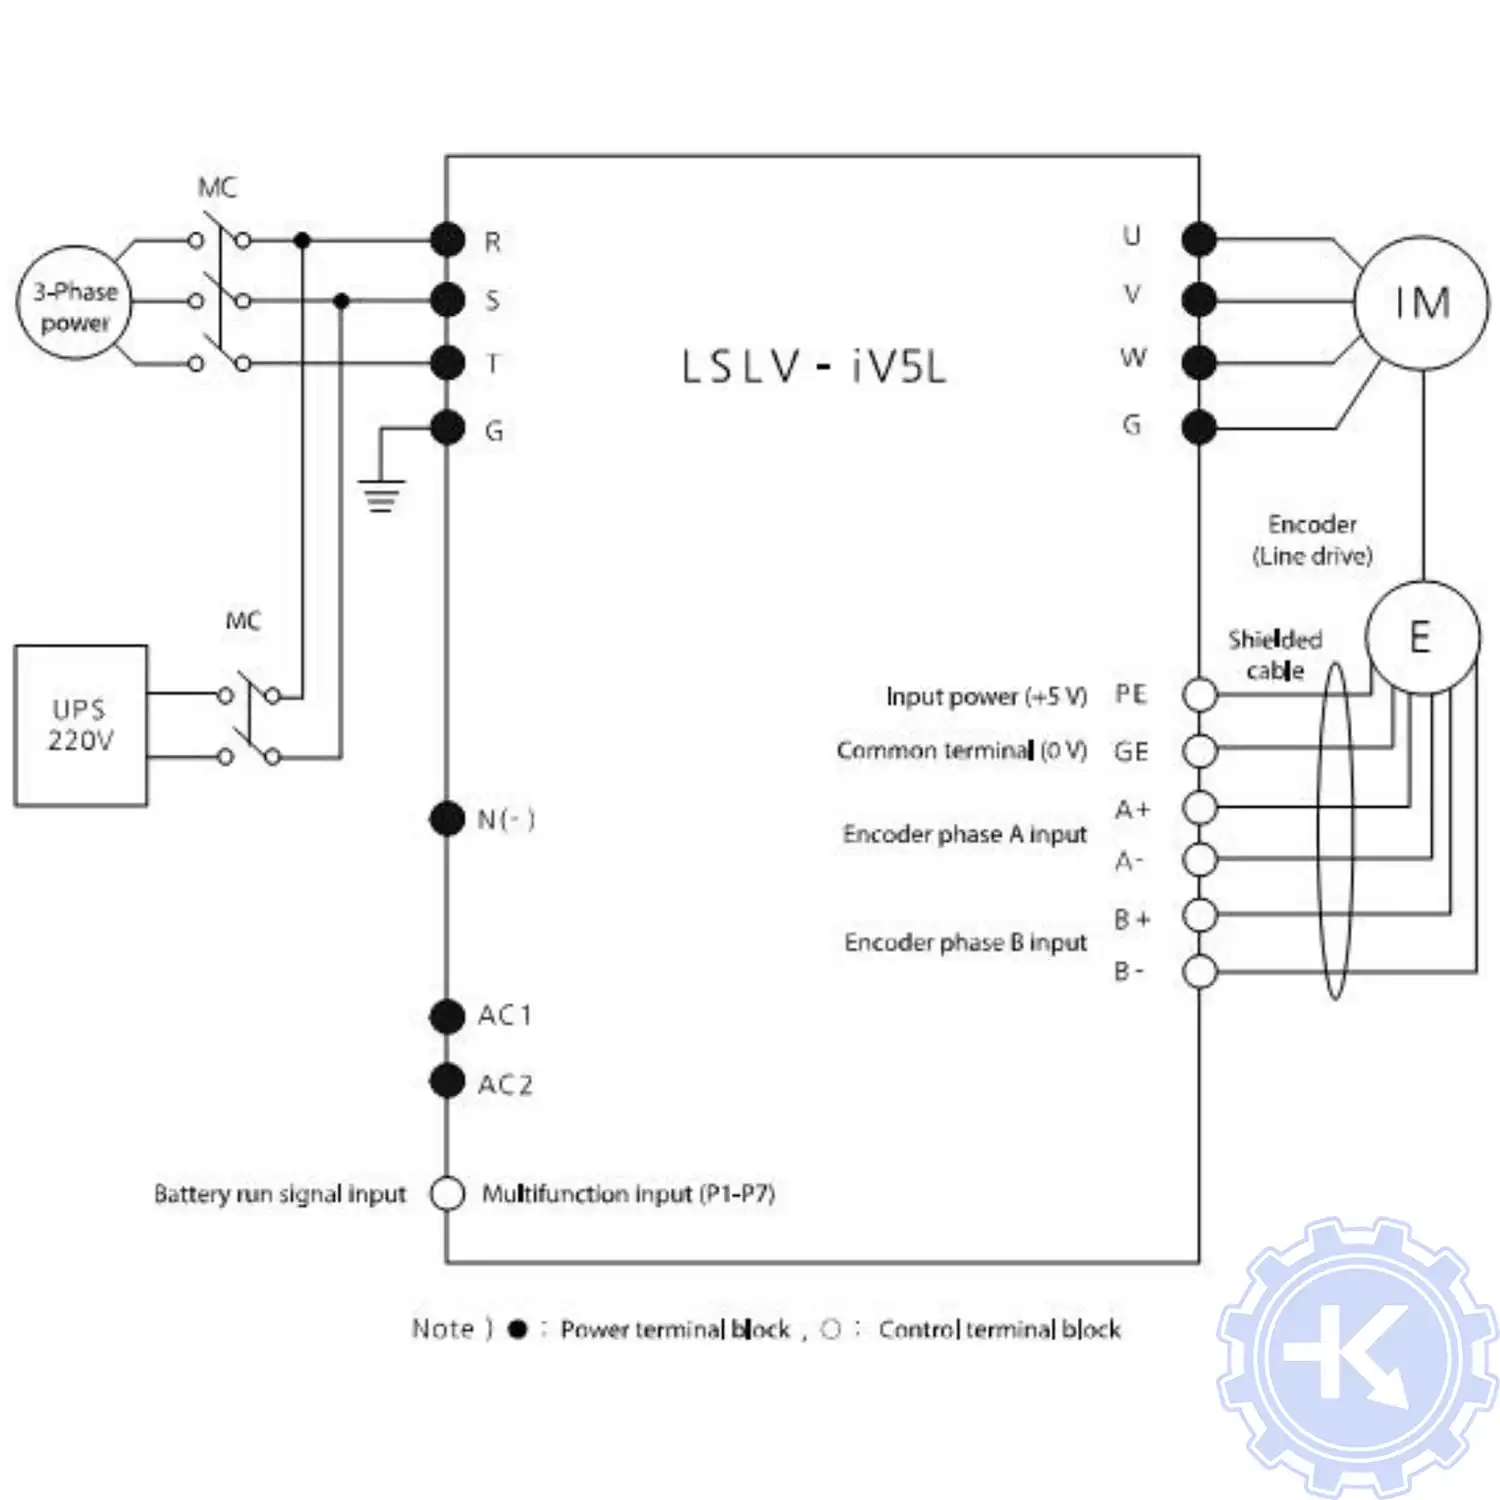 Схема подключения преобразователя частоты LS iV5l с подачей-питания от UPS